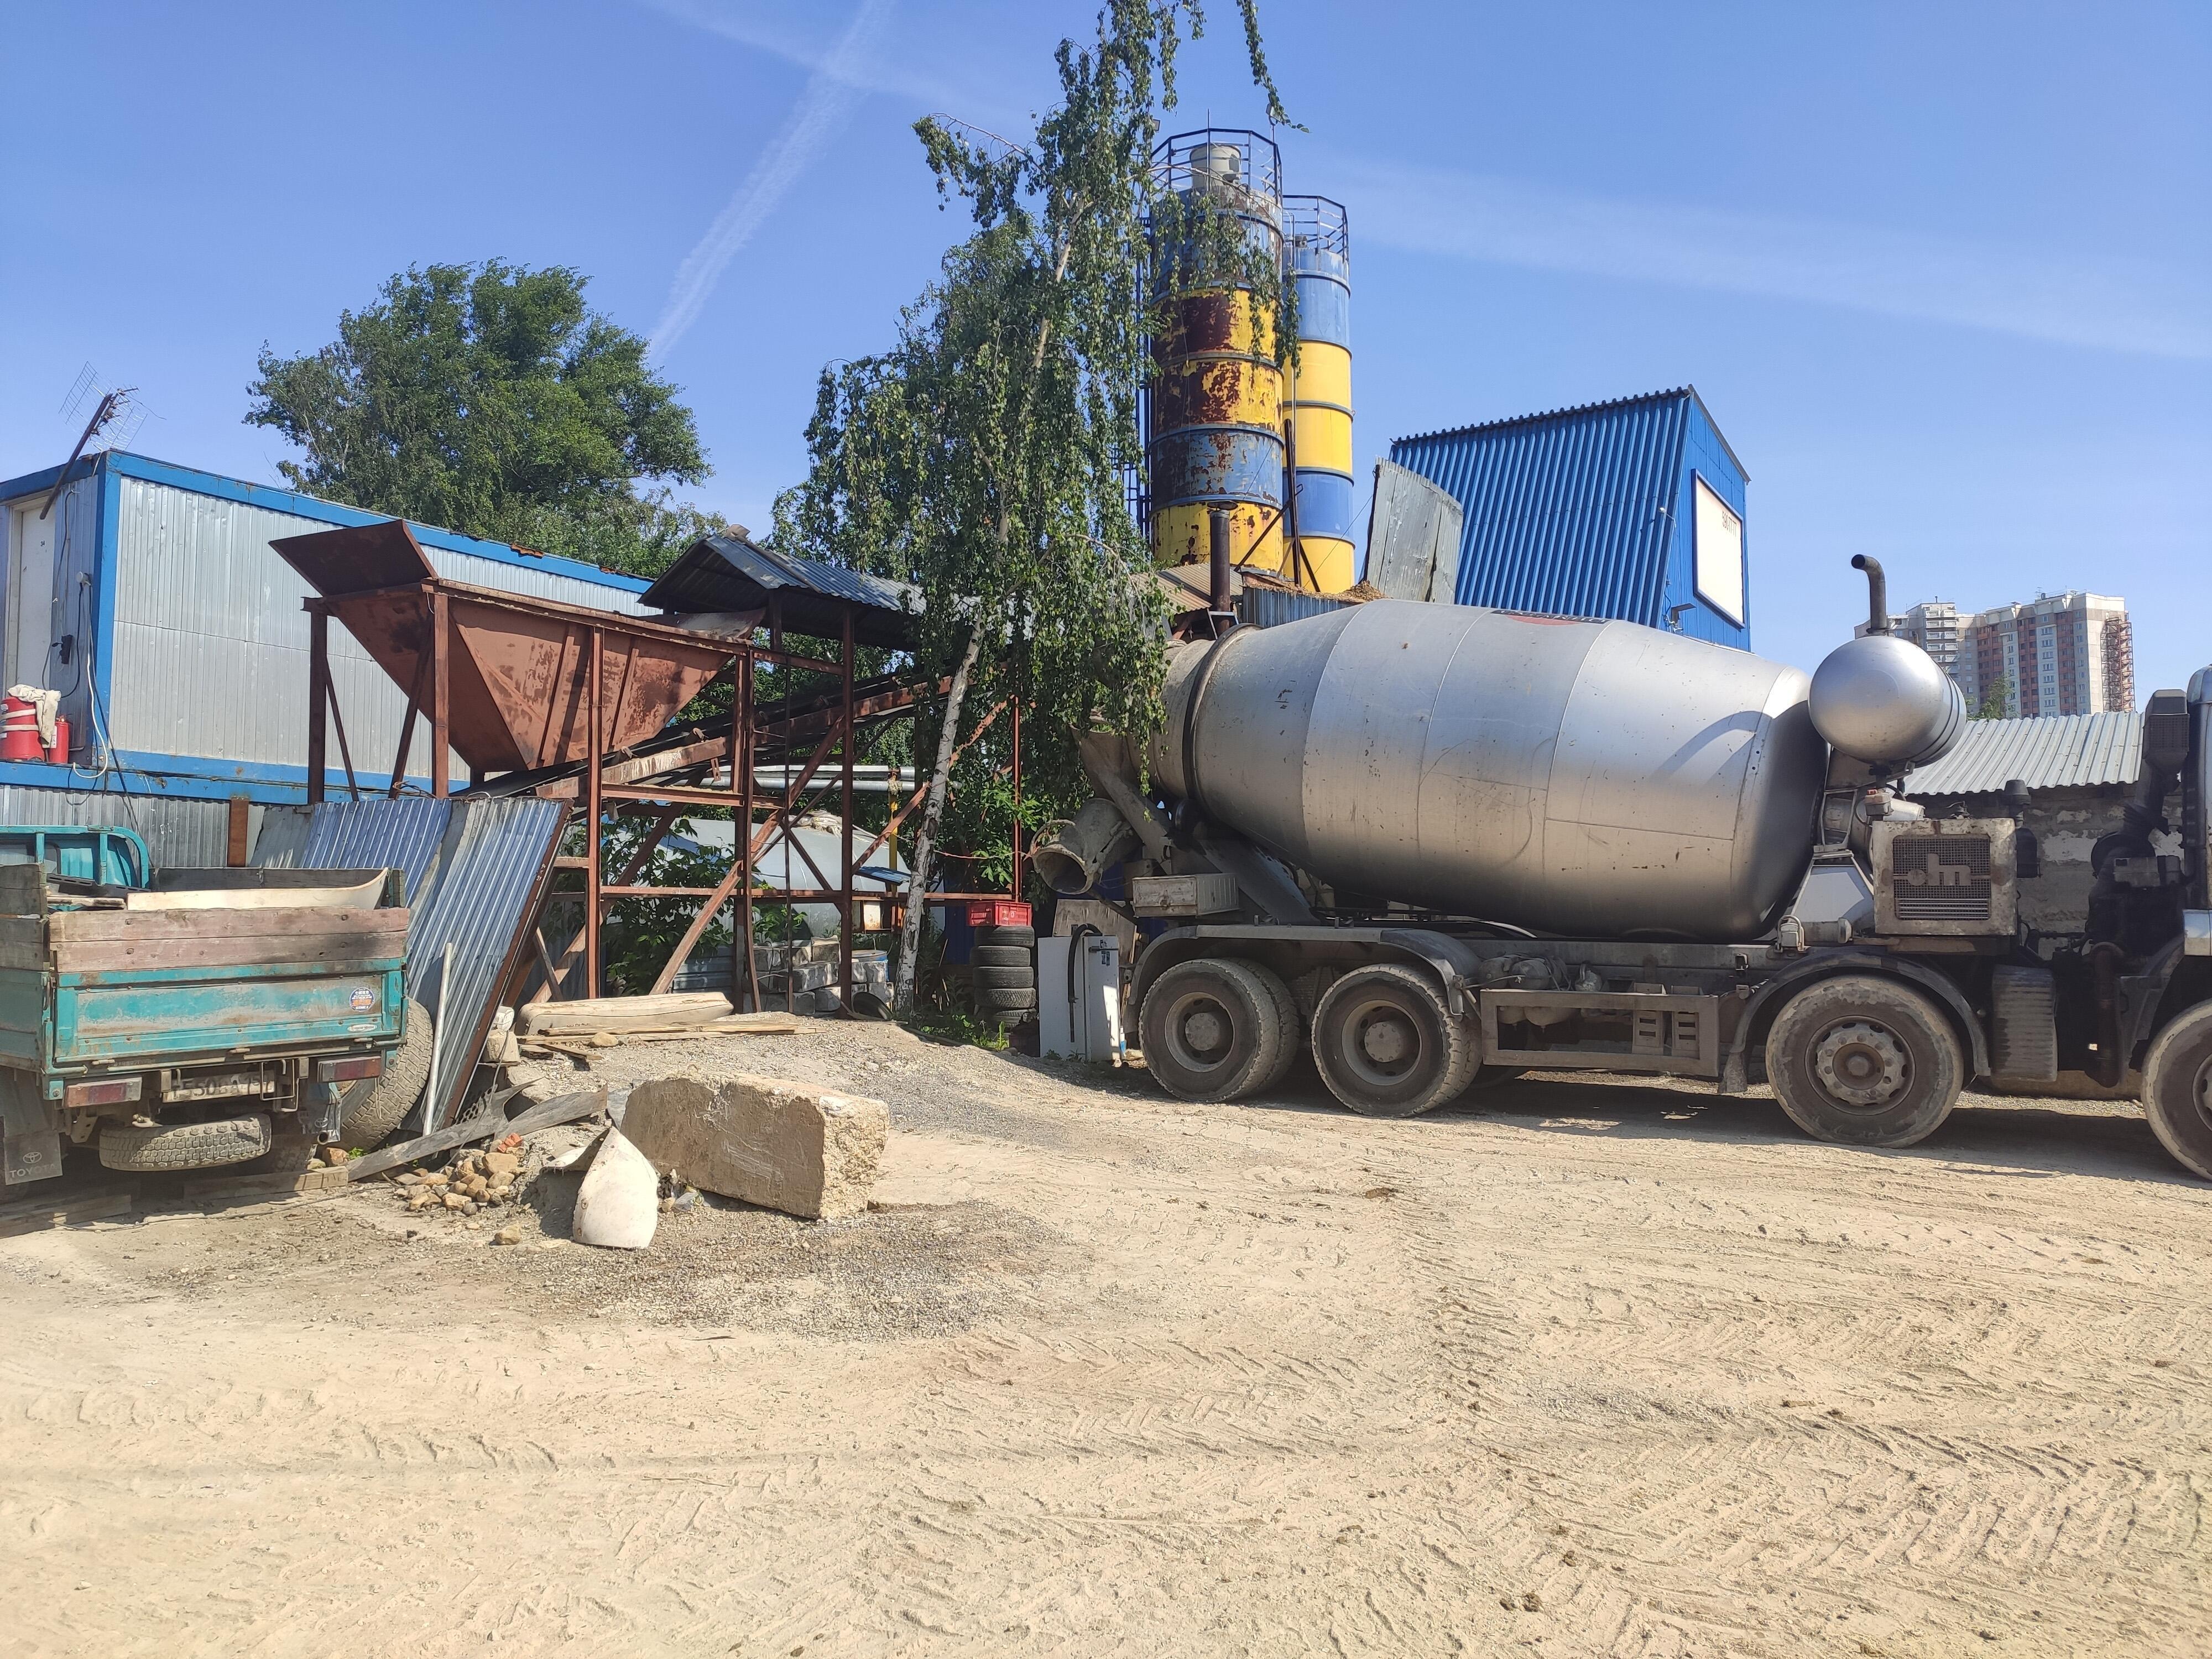 Загрузка жидкого гранитного бетона М400 на бетонном заводе в Одинцово